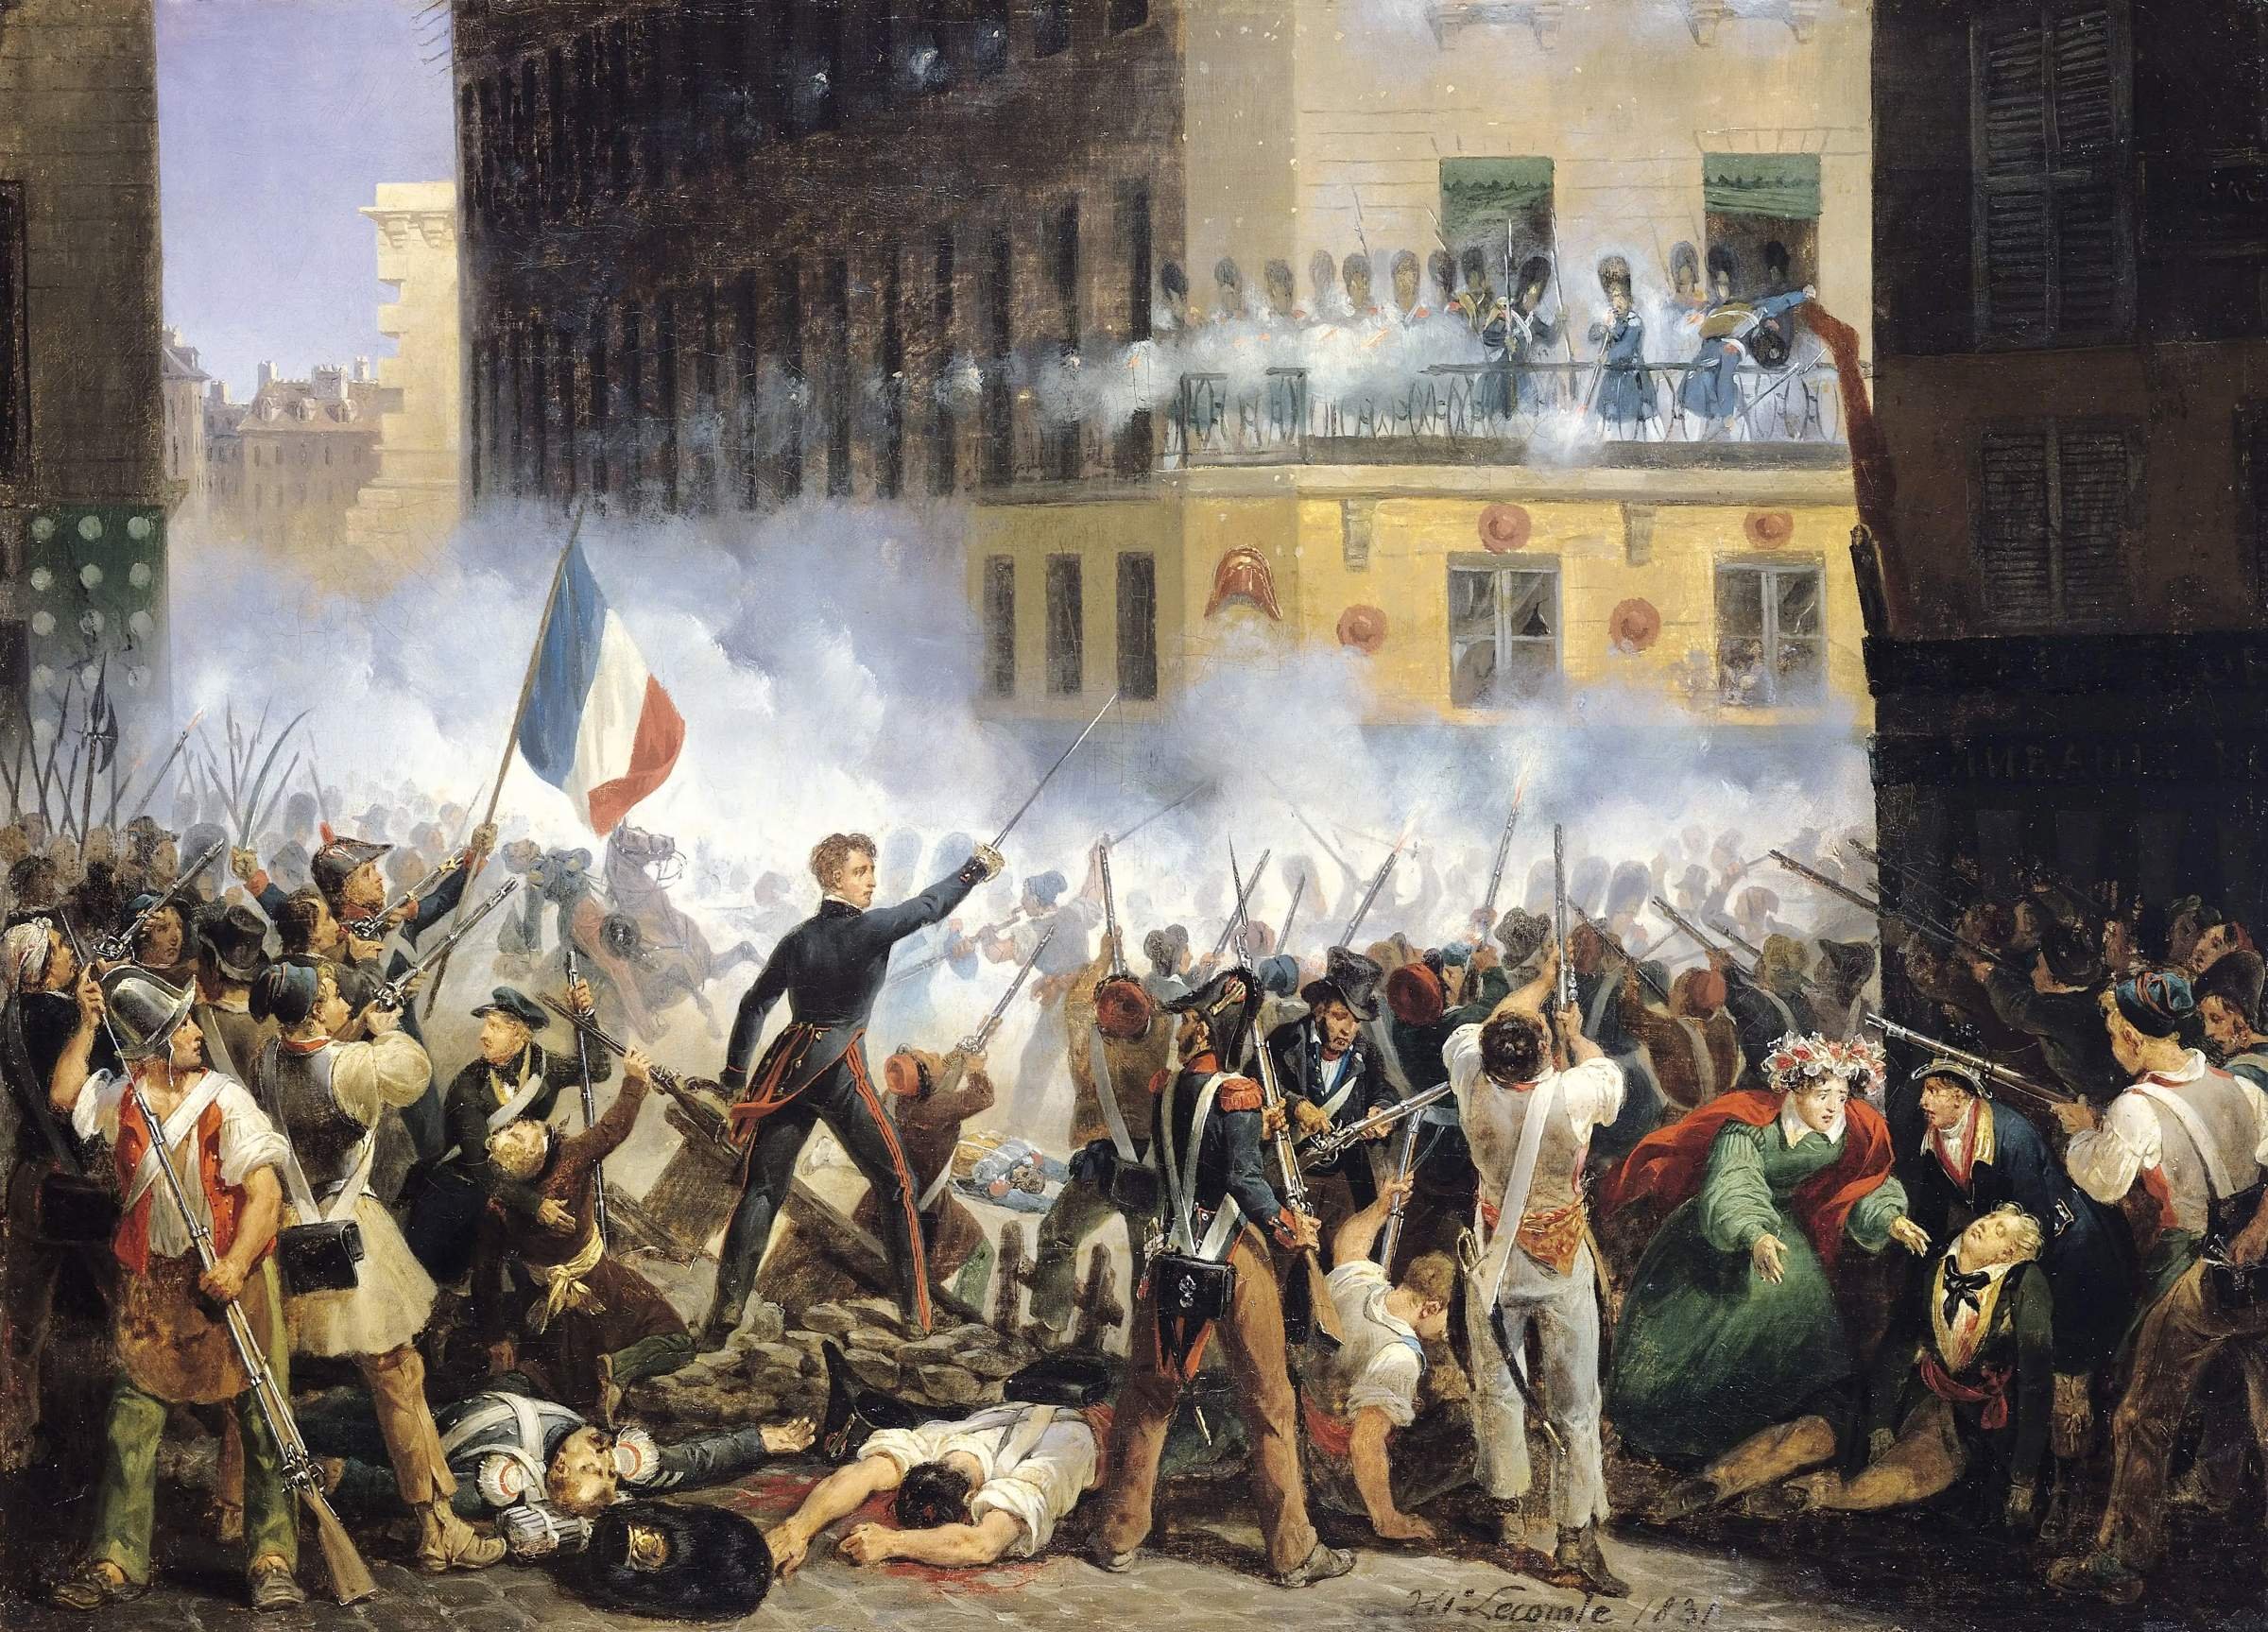 Революция 1789 1794. Революция 1830 г во Франции. Июльская революция 1830. Великая французская революция 1789-1799. Июльская революция 1830 г. во Франции.